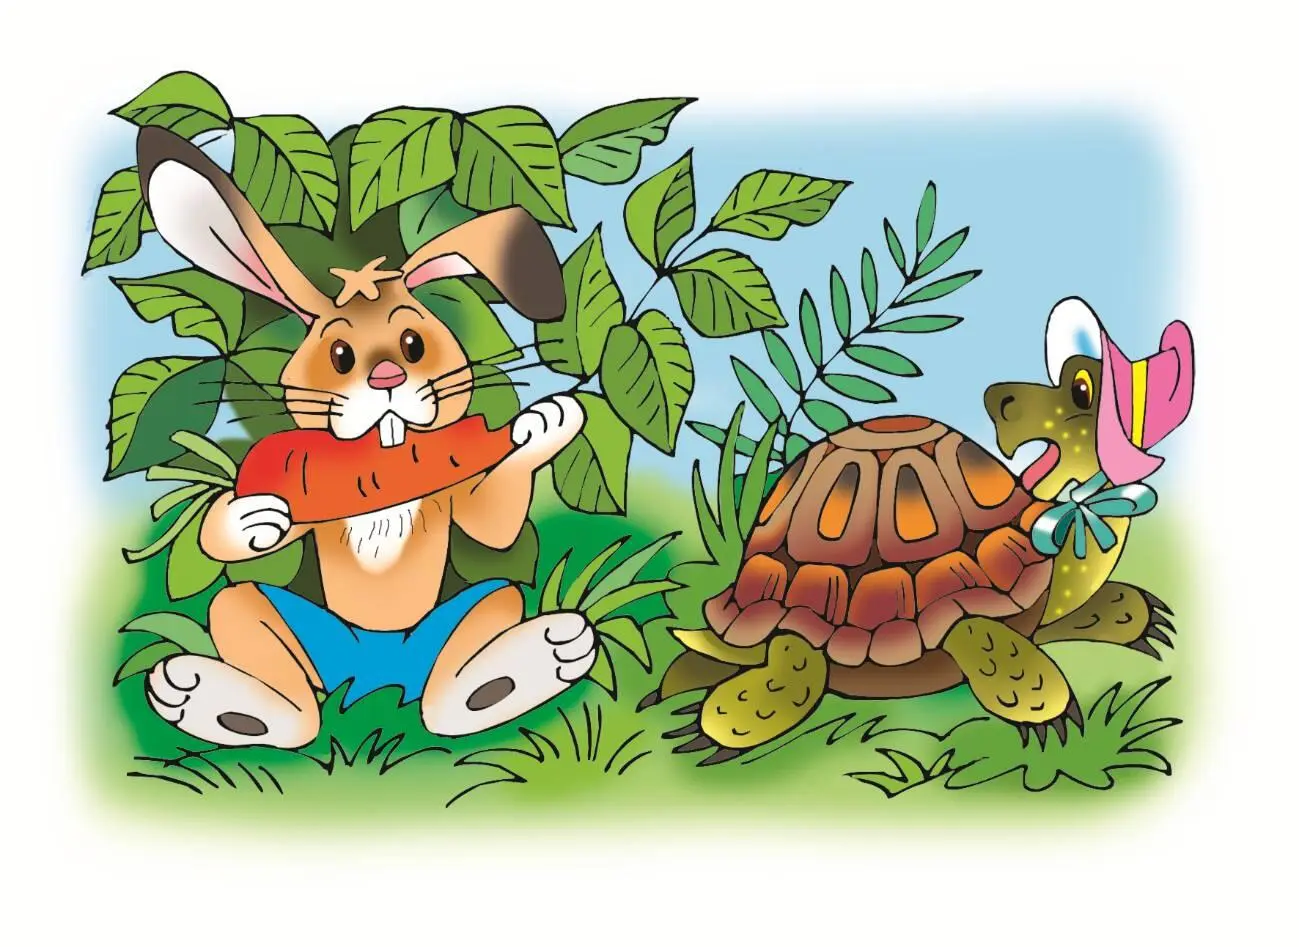 Шли по лесной тропинке Черепашка и Зайчик и увидели морковку Давай поделим - фото 1